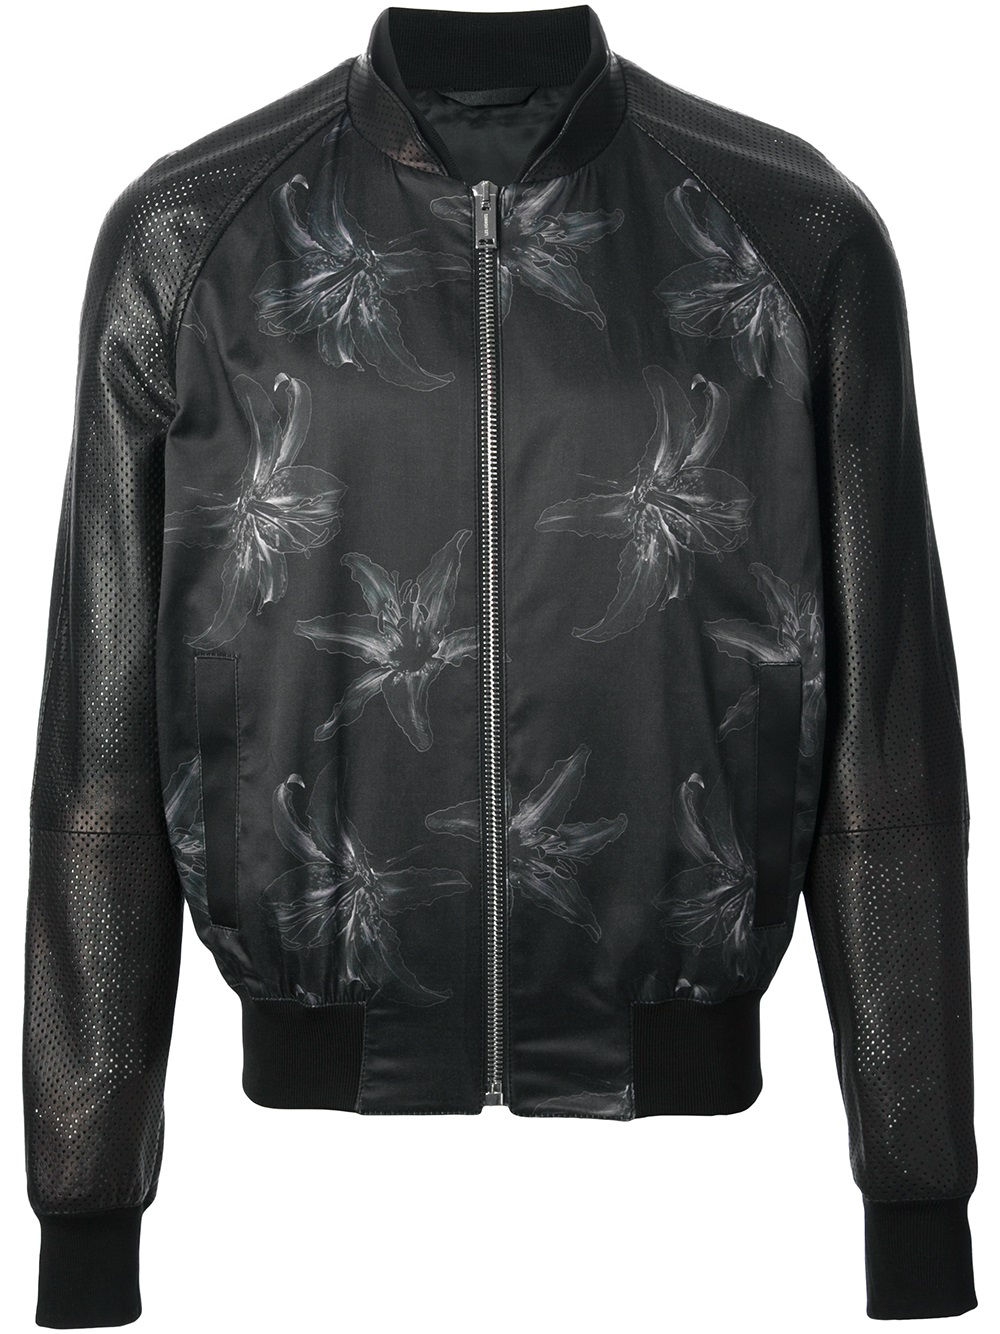 Les Hommes Floral Print Bomber Jacket in Black for Men - Lyst